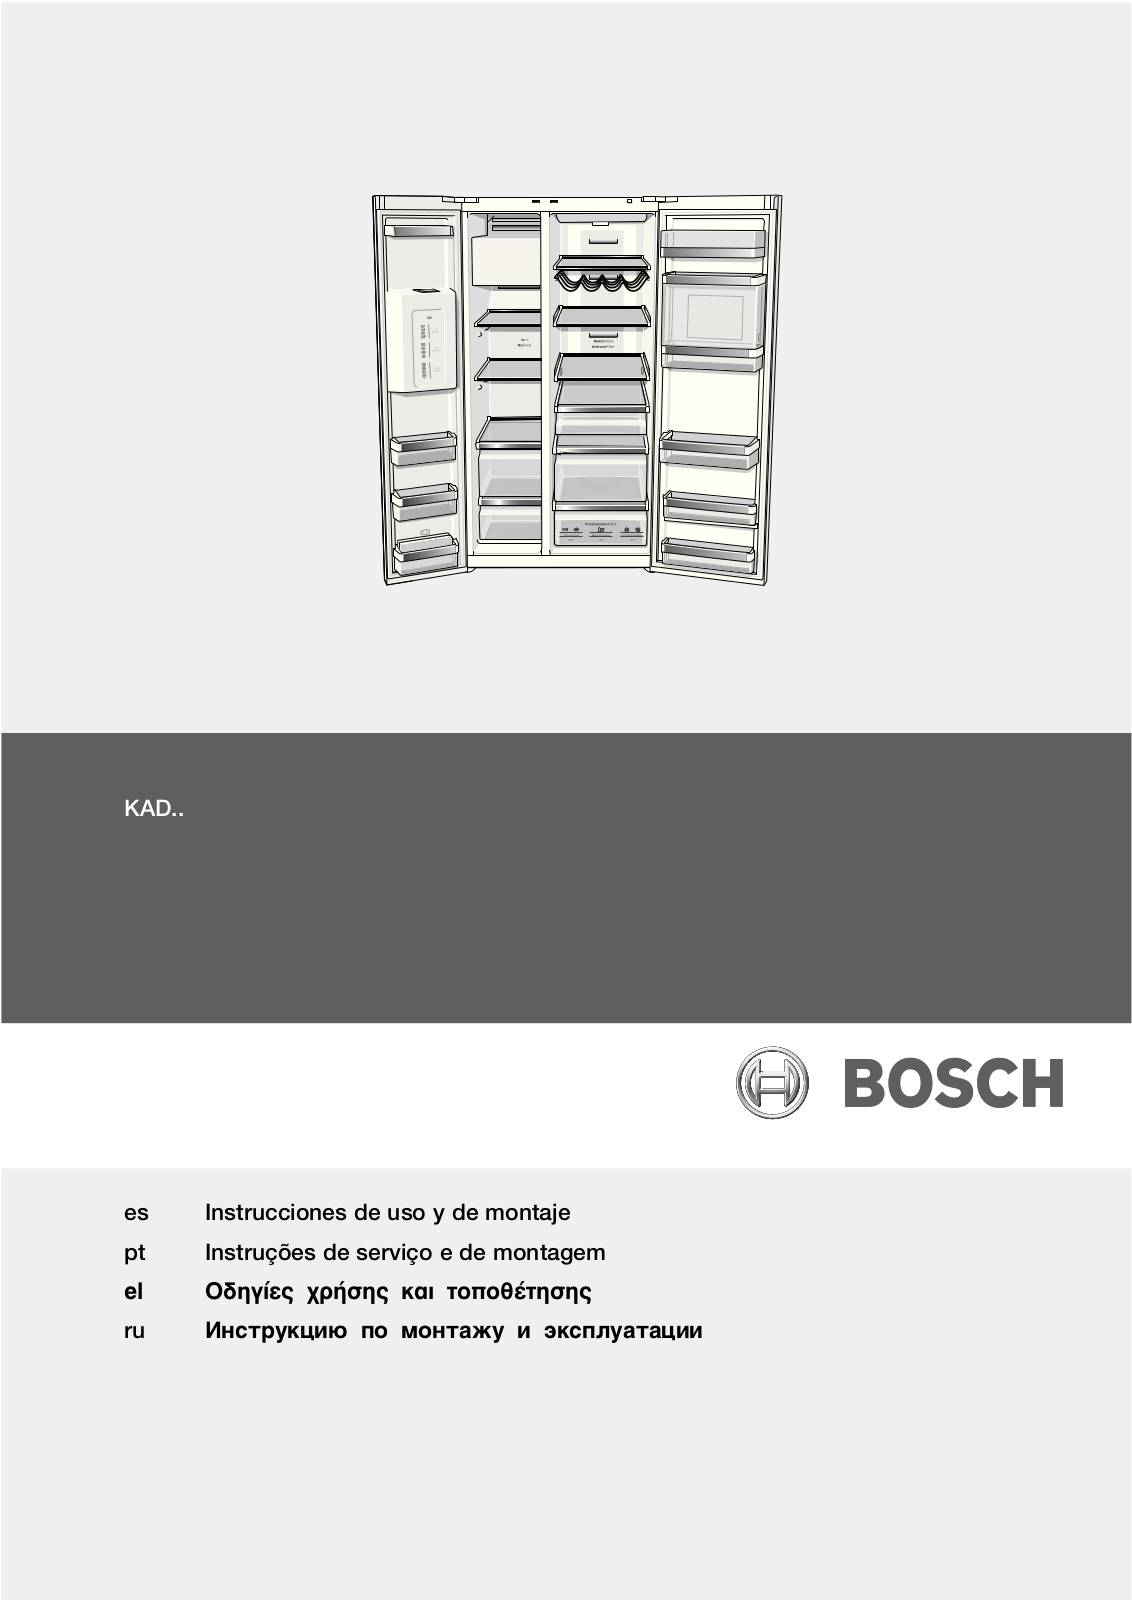 Bosch KAD 62A71, KAD 62S51, KAD 62S21, KAD 62P91 User Manual